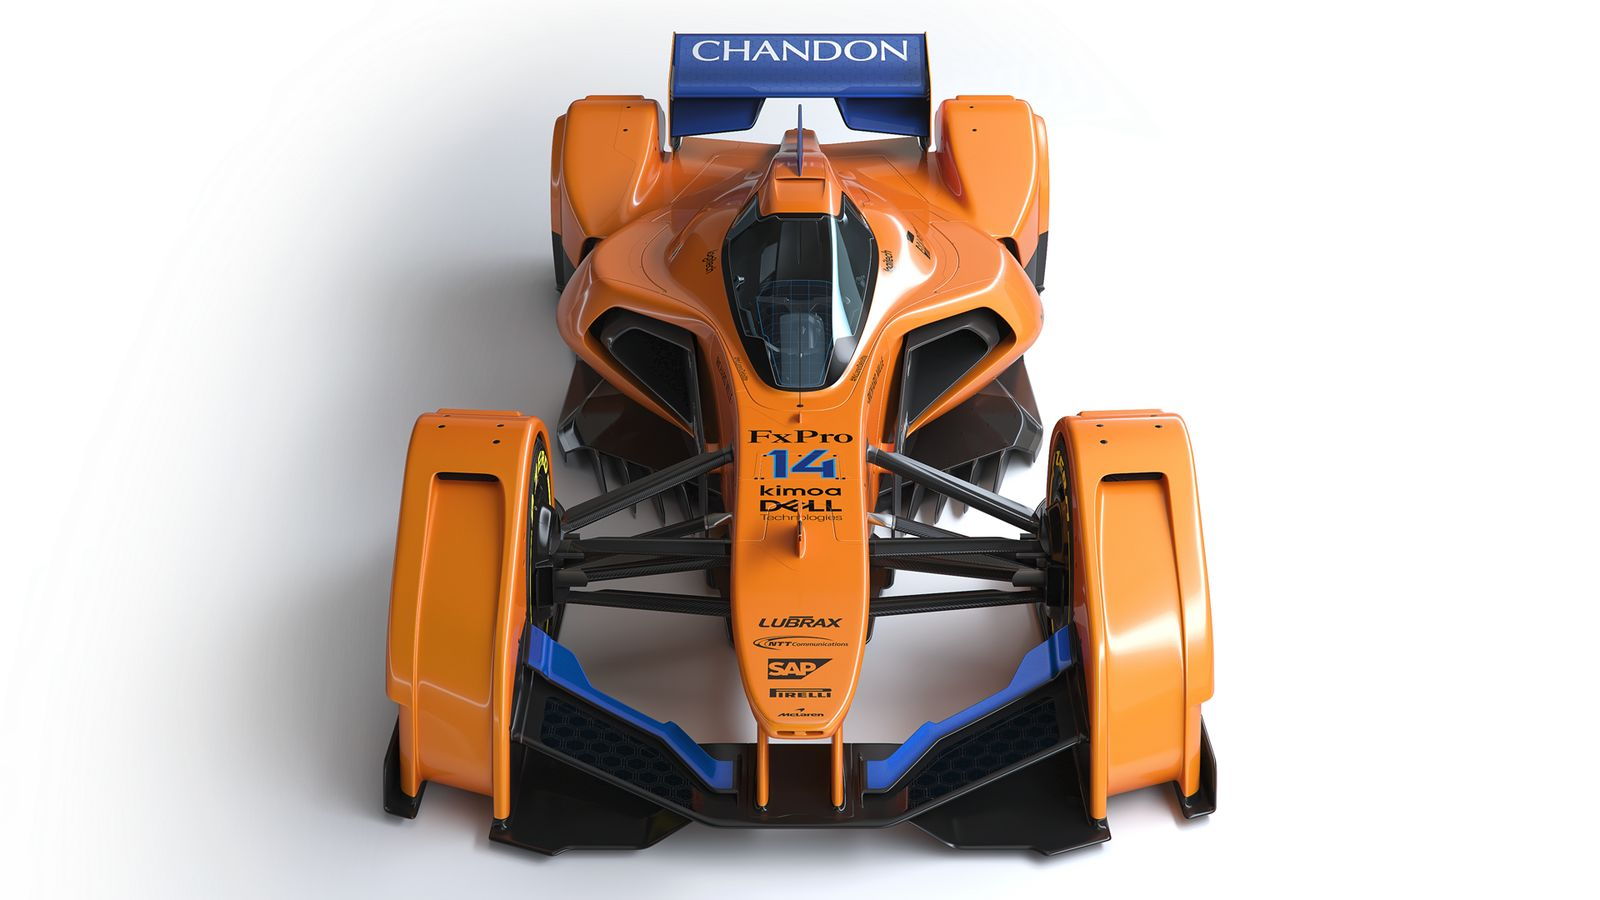 McLaren X2 concept race car with new papaya livery